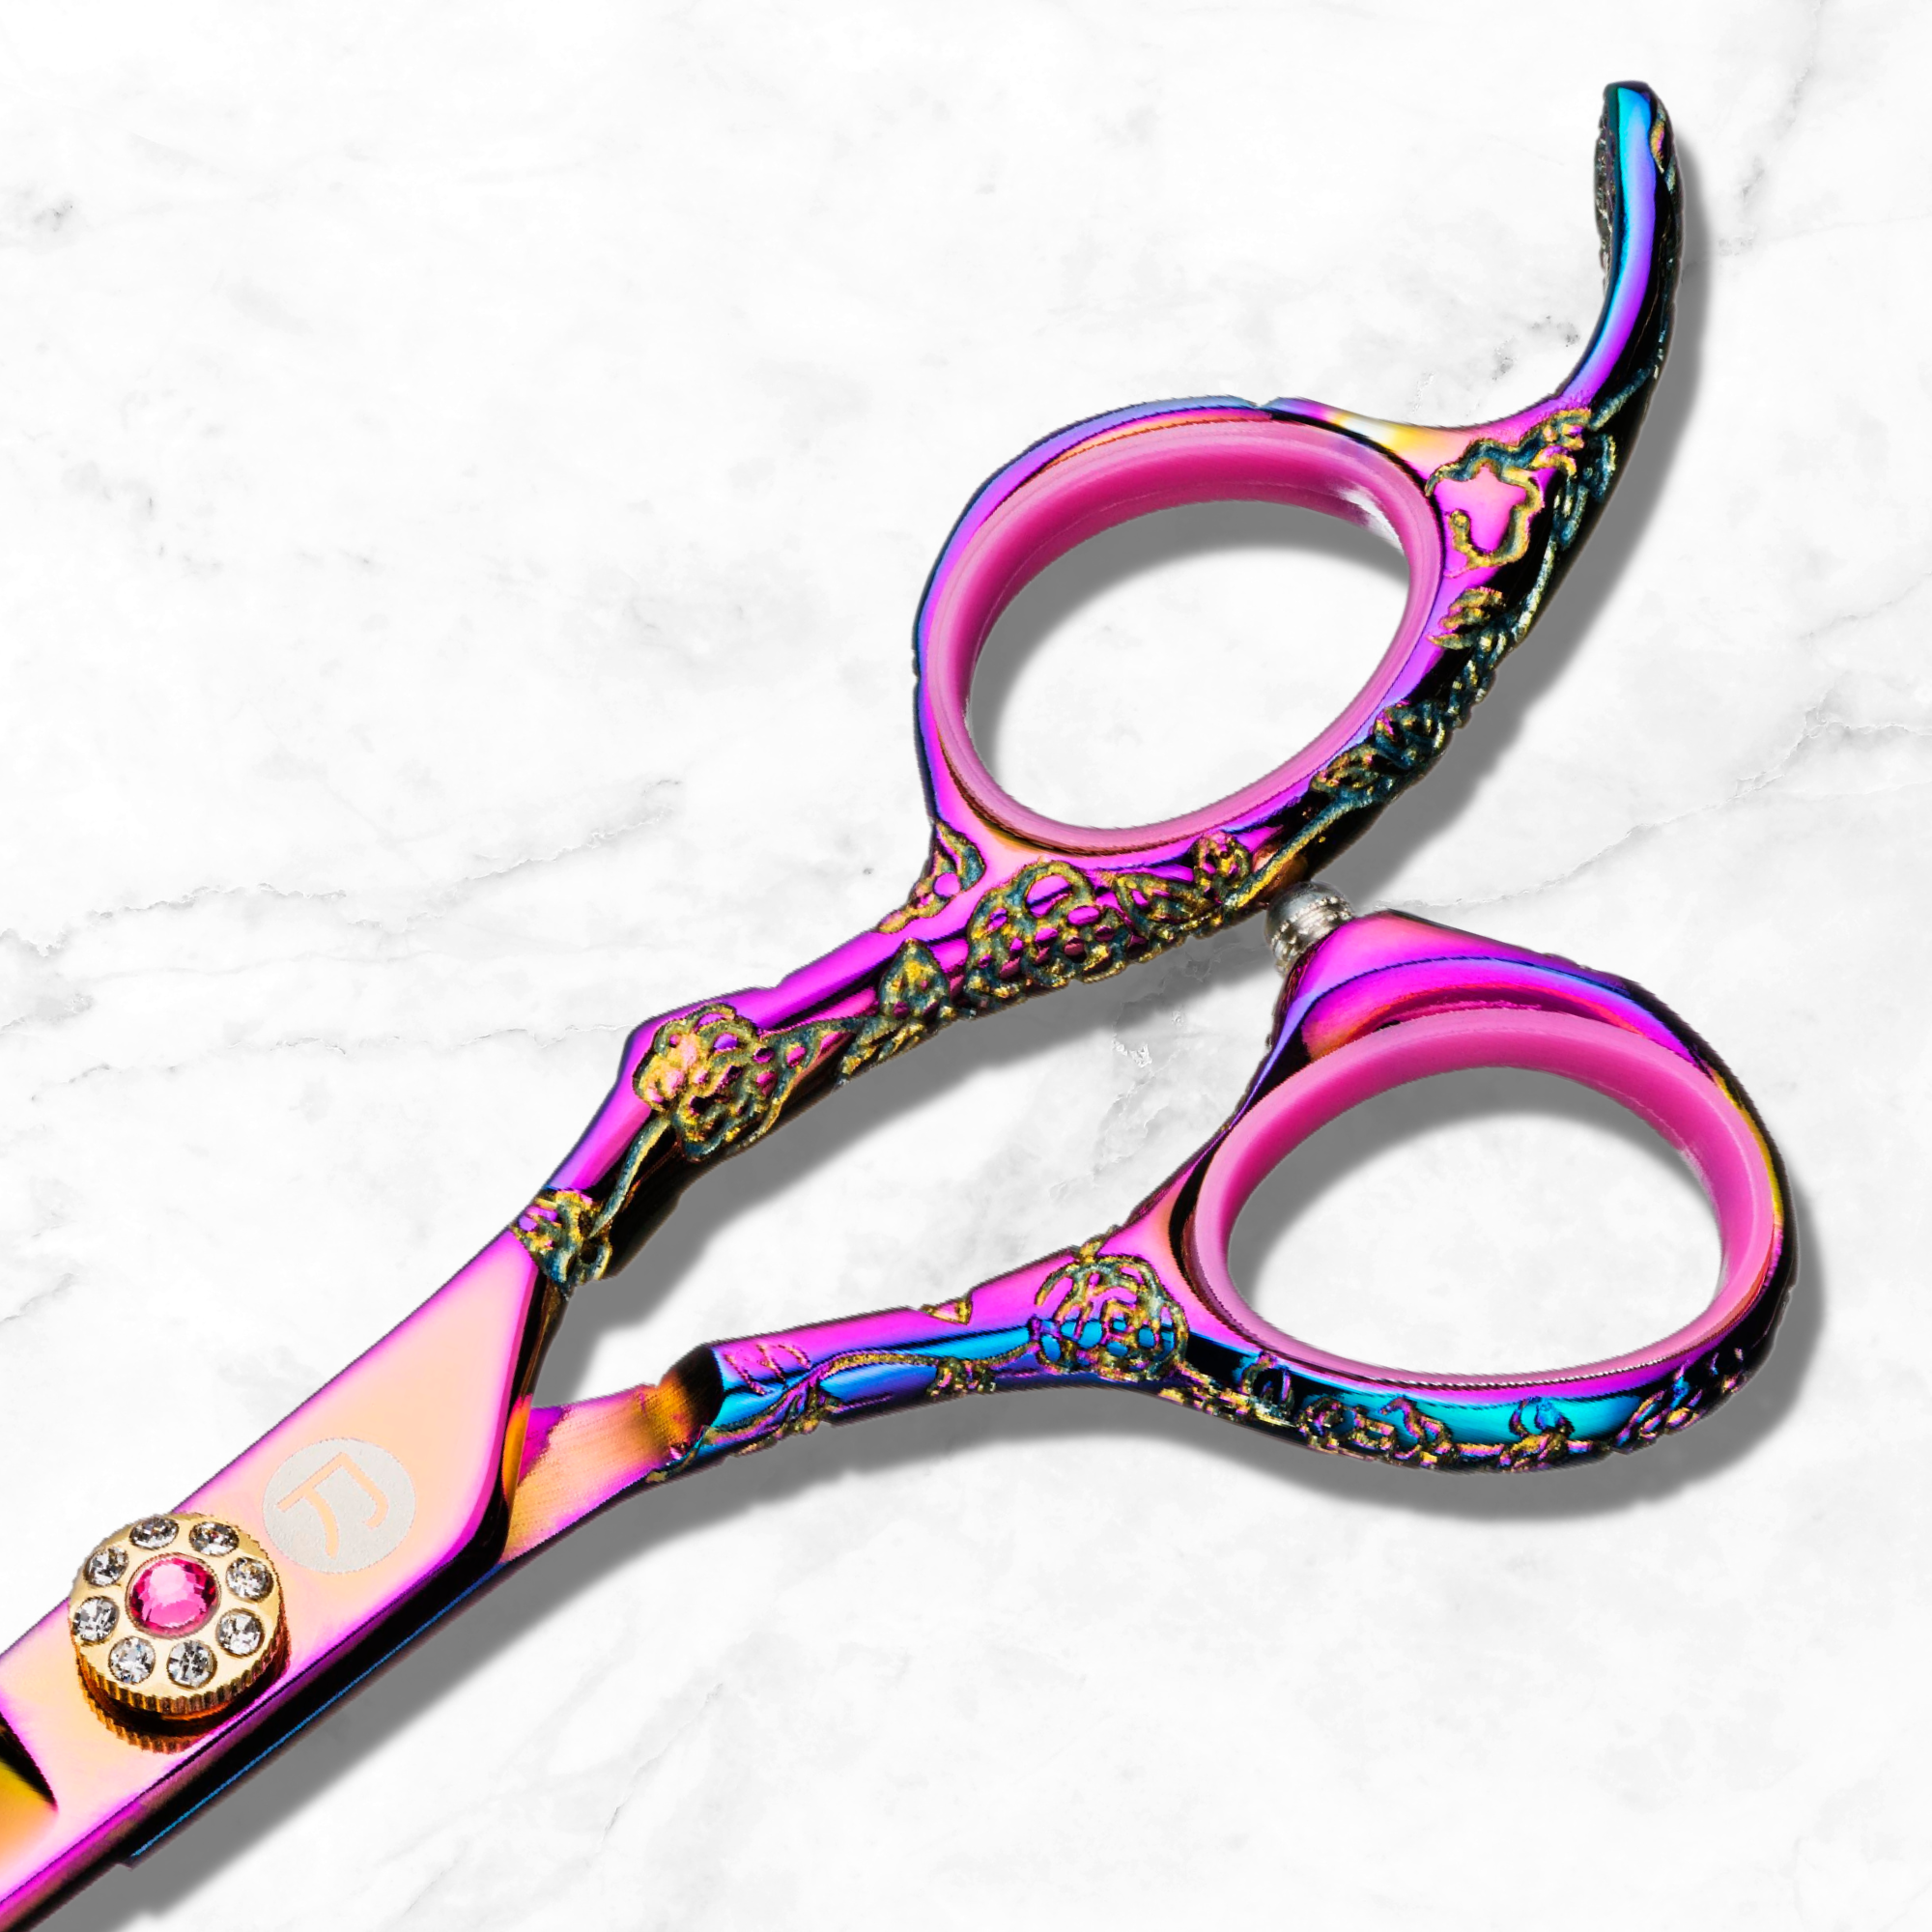 Cesoie/forbici per sfoltire i capelli rosa Kohana